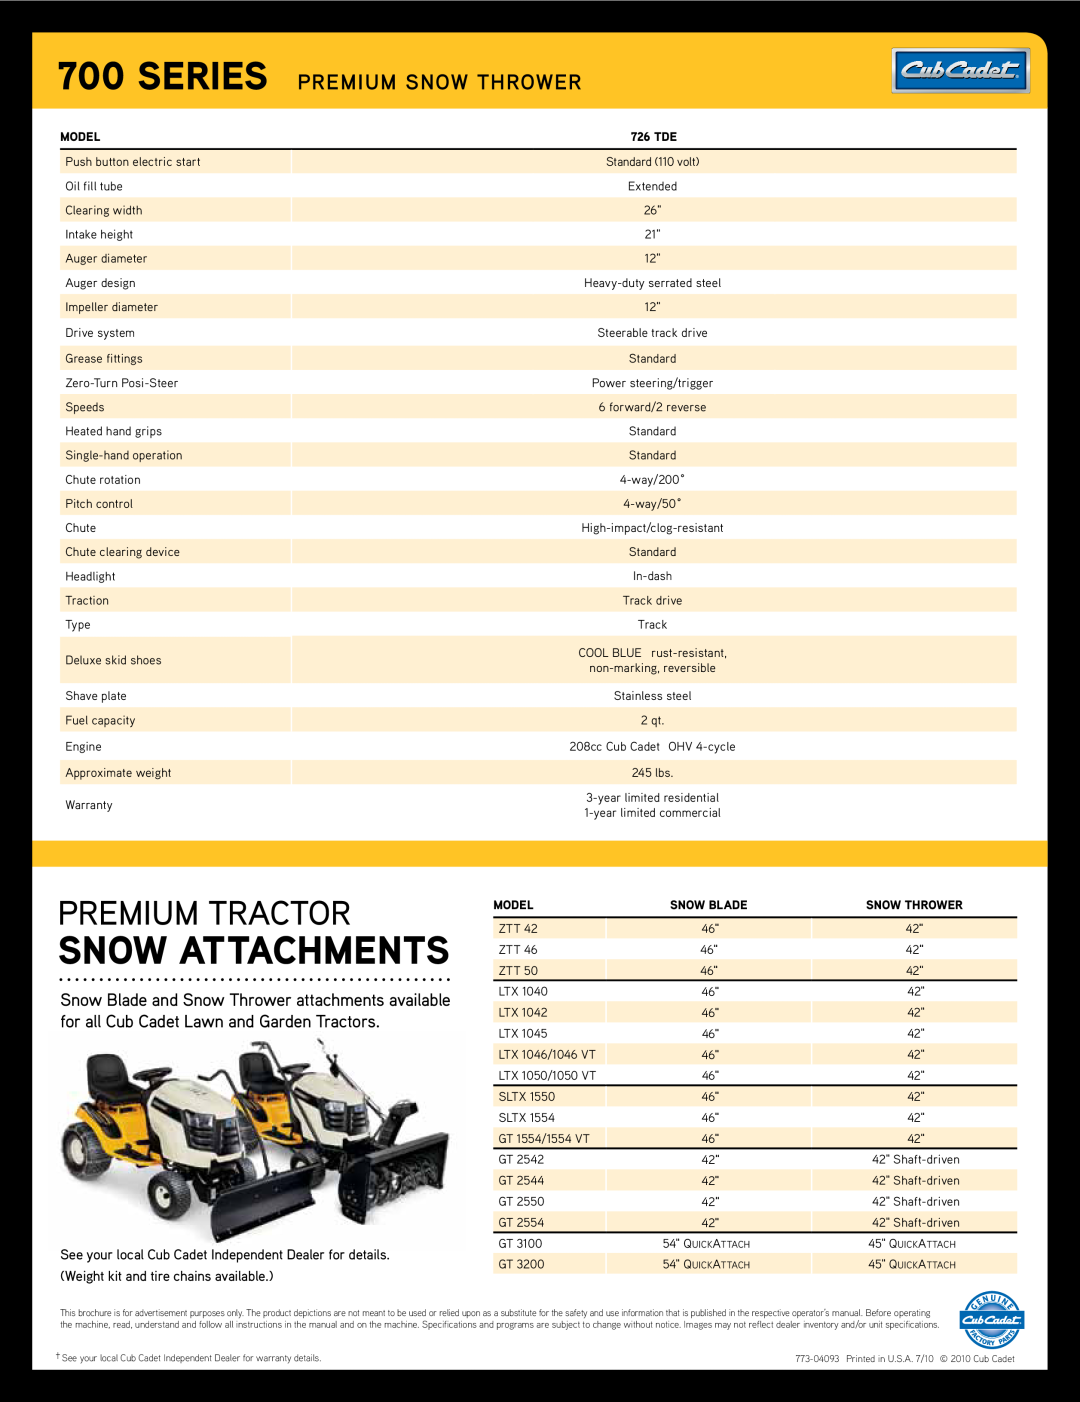 Cub Cadet 726 TDE manual Snow Attachments, Premium Tractor, Series Premium Snow Thrower 